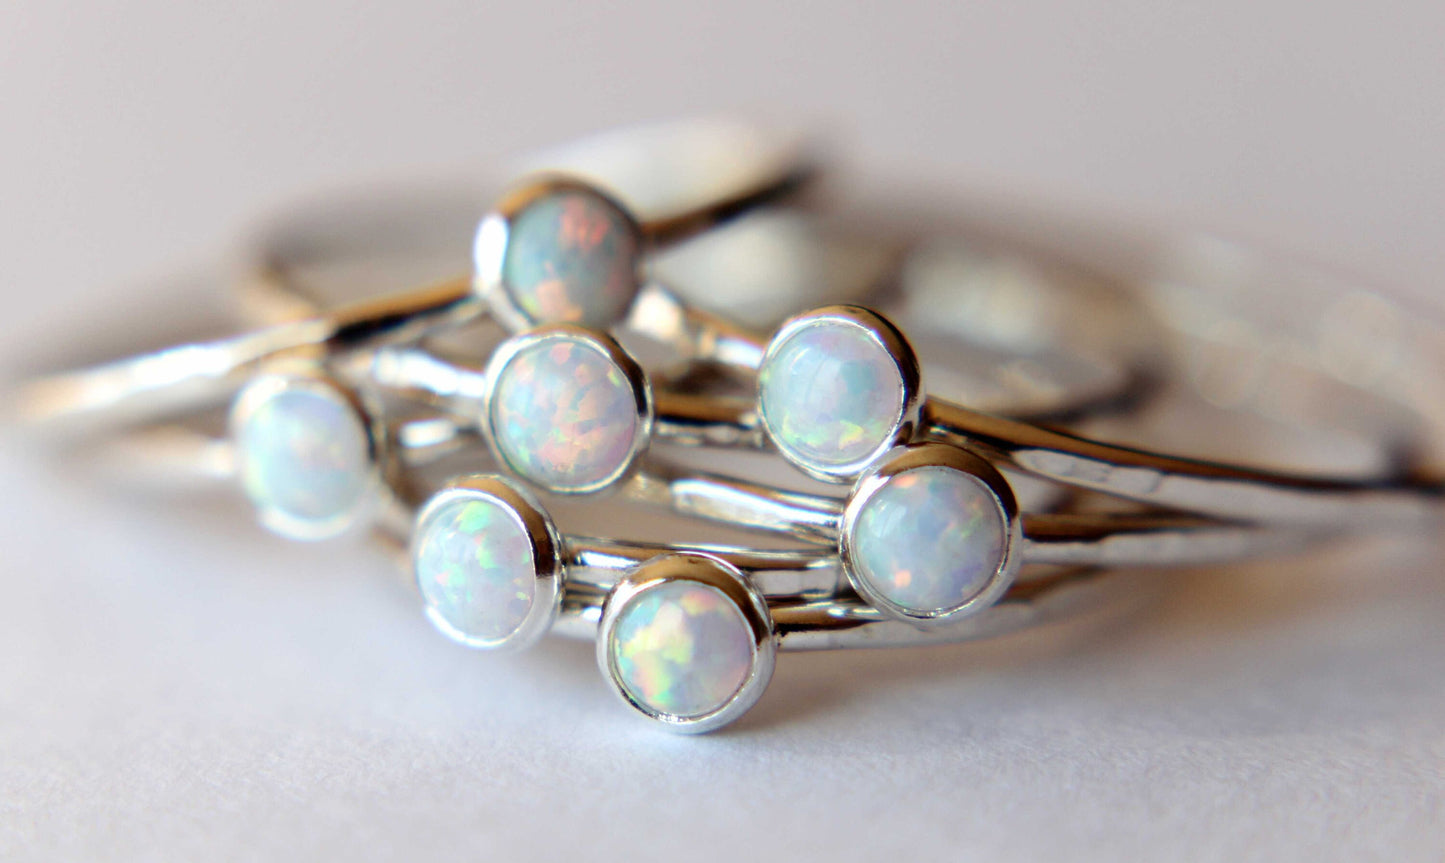 Textured Opal Stacking Ring, Slim Ring, Stacking Gemstone Ring, Opal Rings, Textured Rings, Whisper Gemstone Rings, Gift, White Opal, Gift